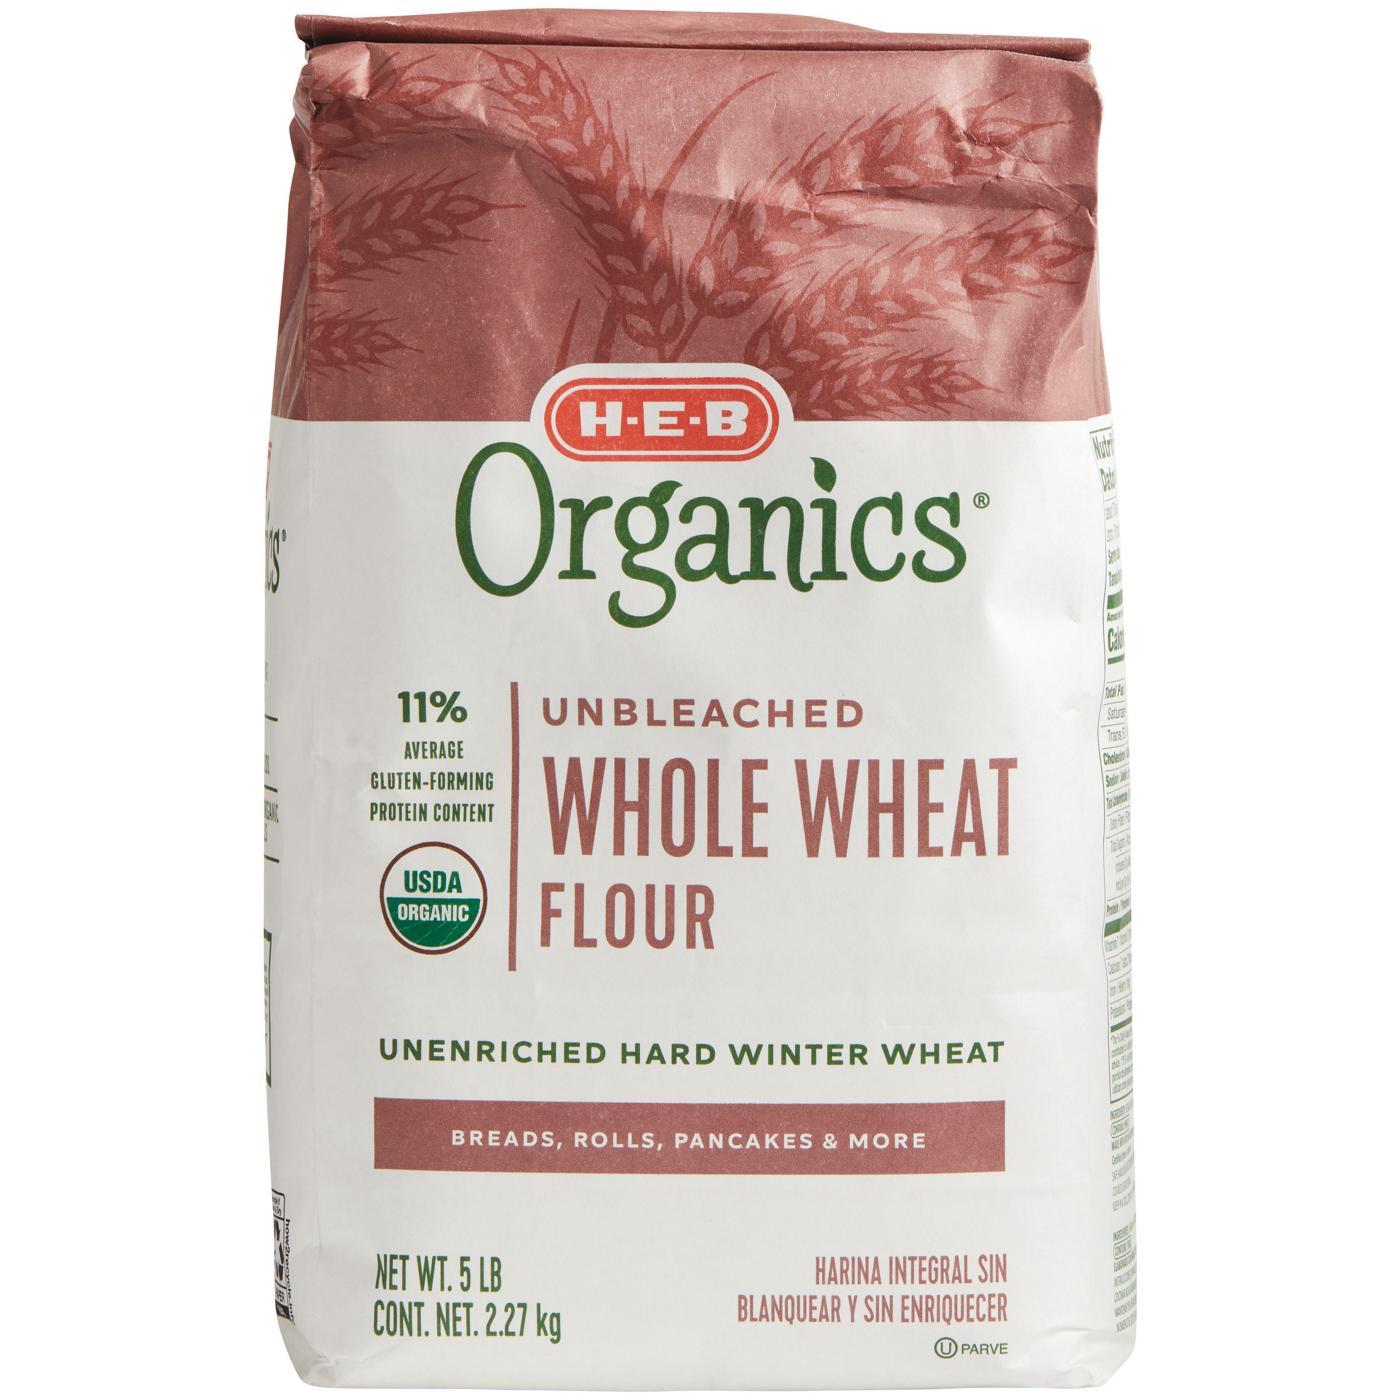 H-E-B Organics Unbleached Whole Wheat Flour; image 1 of 2